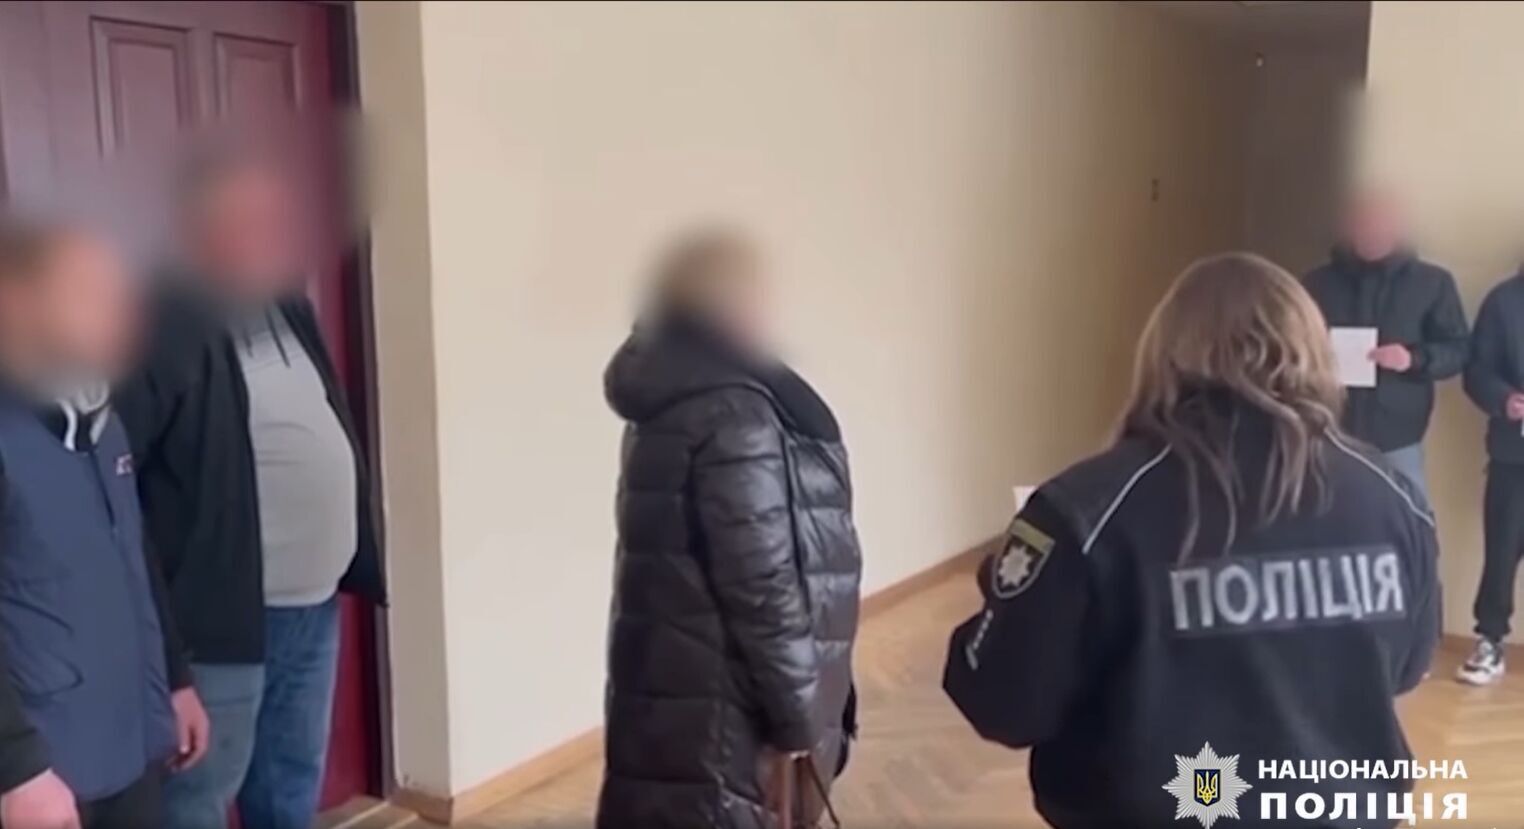 Бив, навіть коли впала на землю: на Київщині затримали підозрюваного в розбійному нападі на жінку. Відео